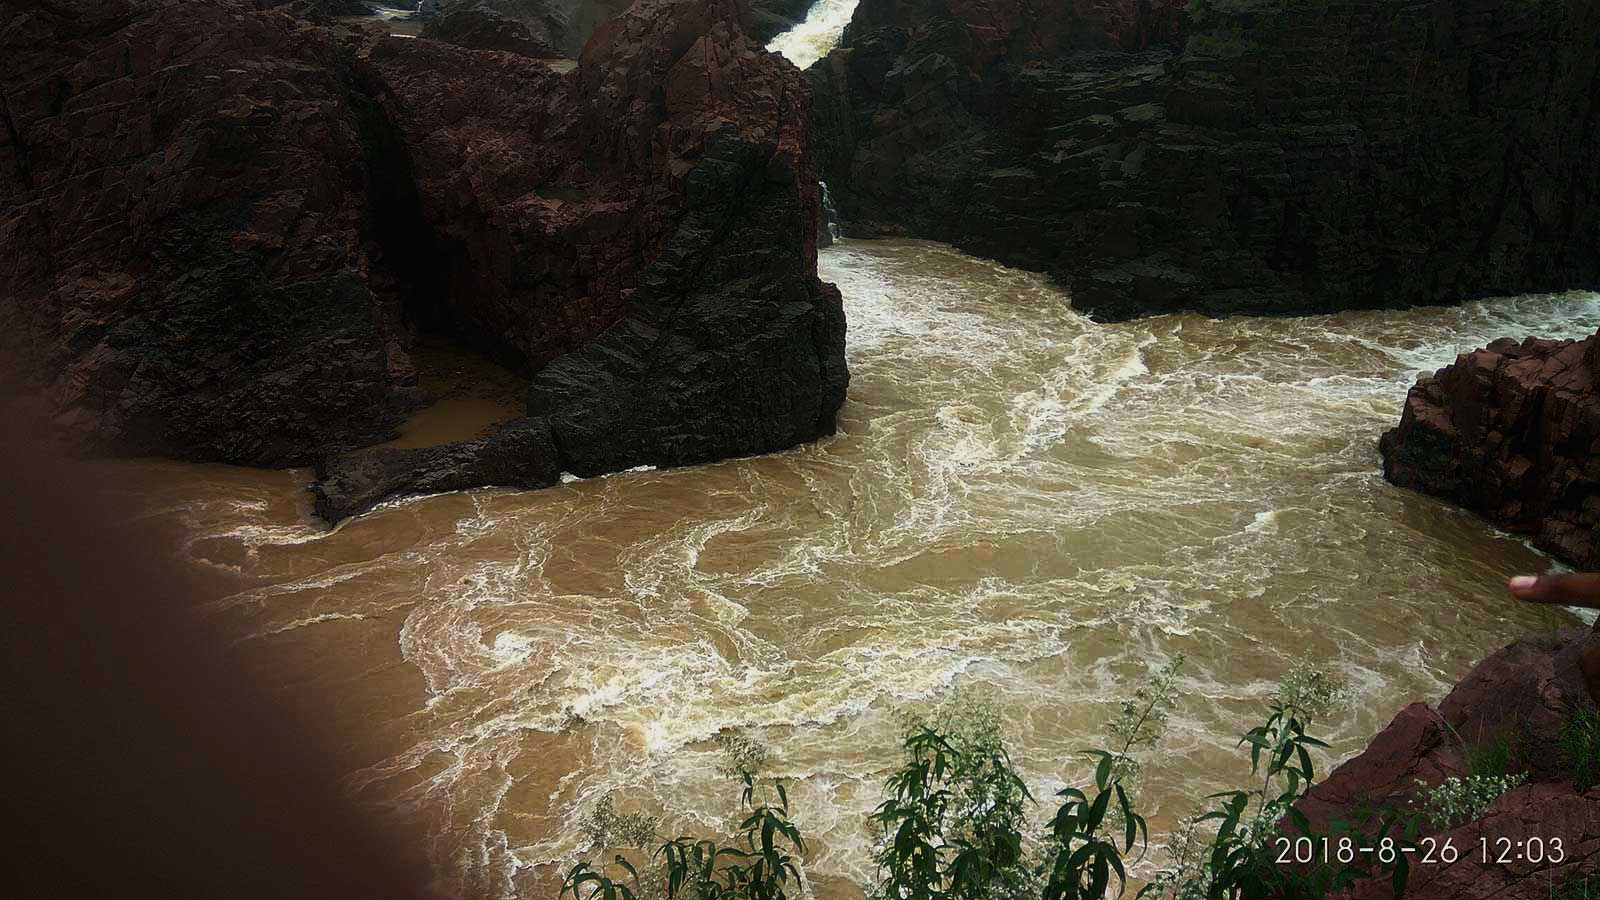 Raneh Fall, Ken River, Karnavati River